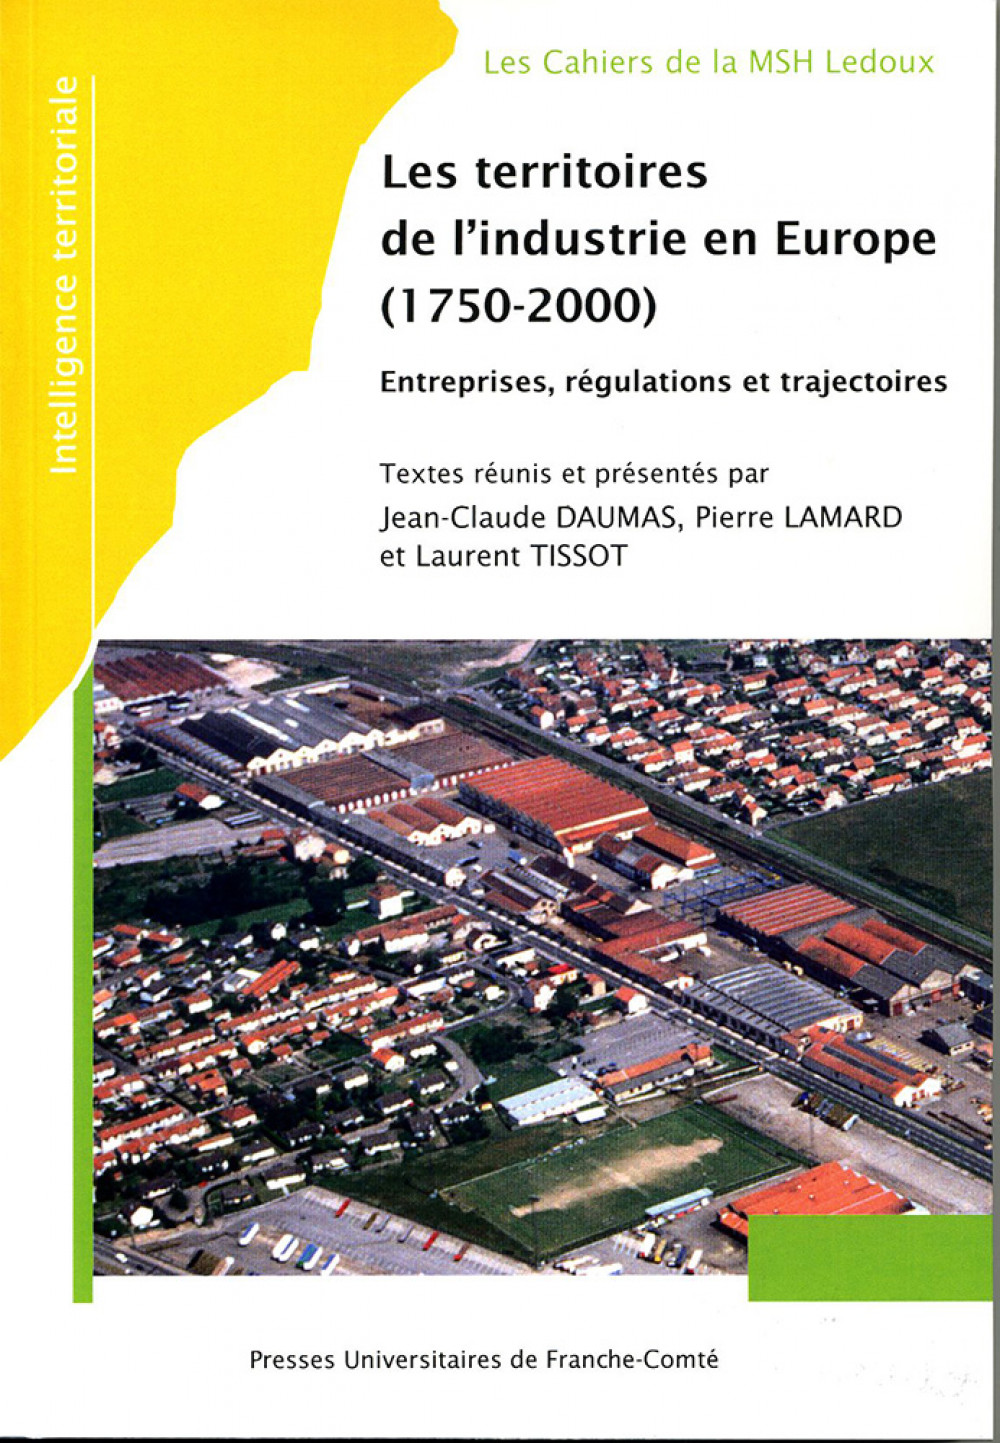 Les territoires de l'industrie en Europe (1750-2000)